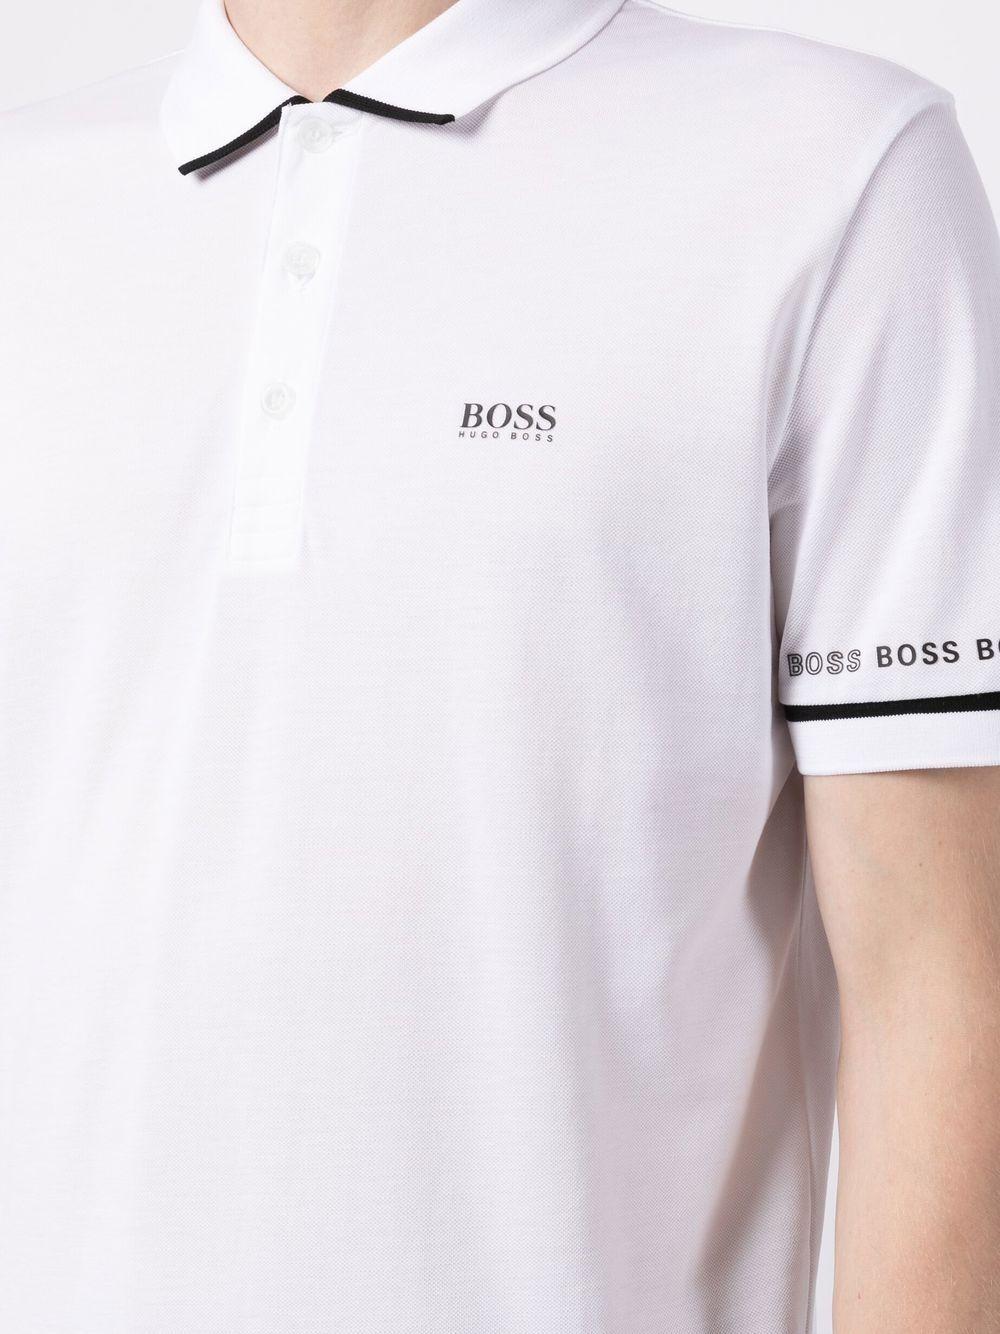 BOSS by HUGO BOSS Shirt In Logo Details White for Men Lyst